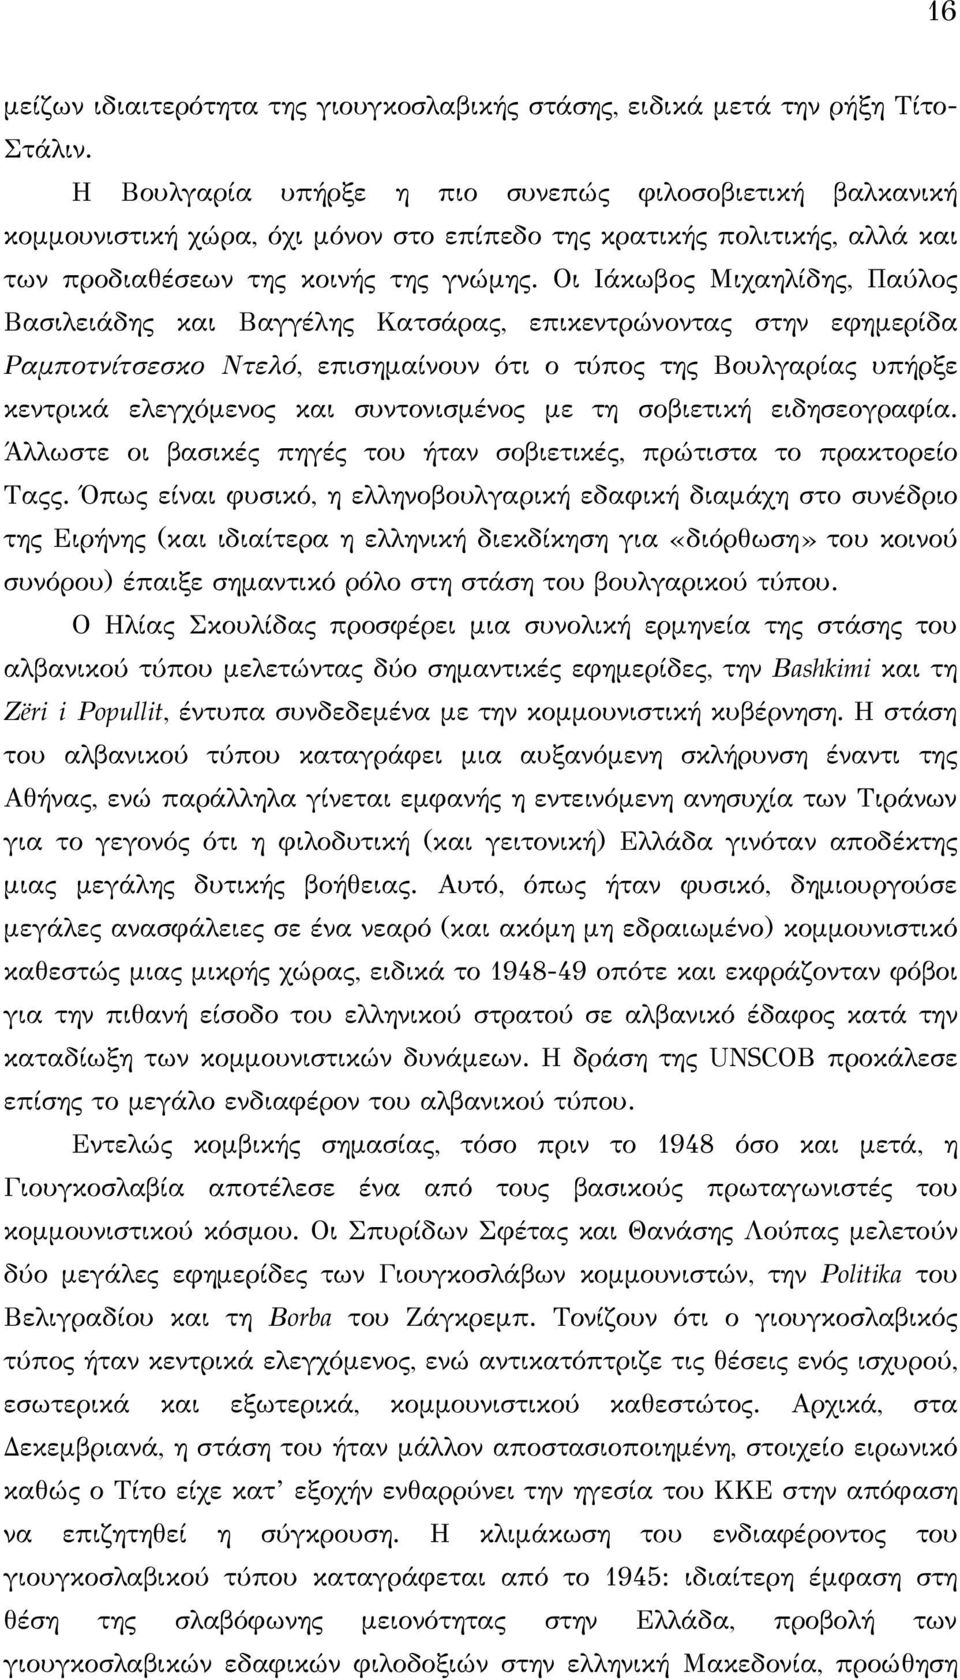 Οι Ιάκωβος Μιχαηλίδης, Παύλος Βασιλειάδης και Βαγγέλης Κατσάρας, επικεντρώνοντας στην εφημερίδα Ραμποτνίτσεσκο Ντελό, επισημαίνουν ότι ο τύπος της Βουλγαρίας υπήρξε κεντρικά ελεγχόμενος και